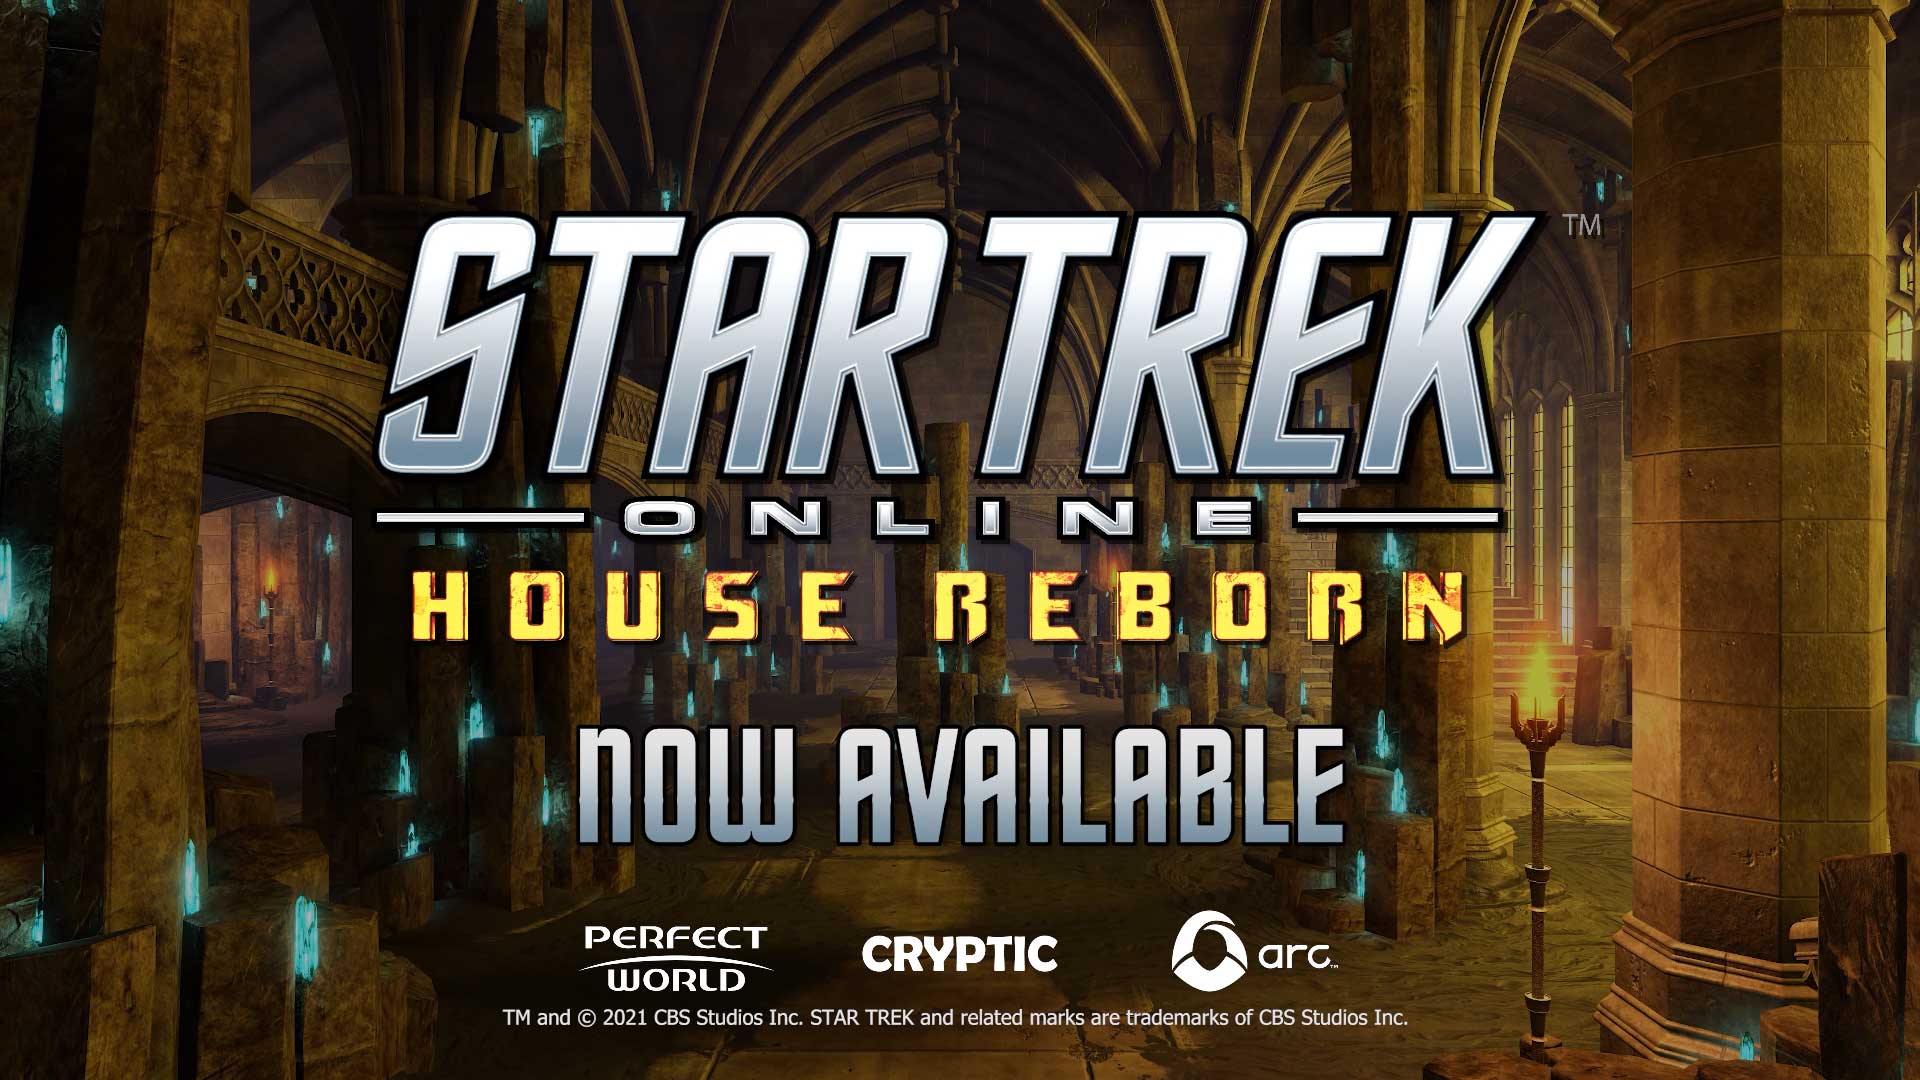 Star Trek Online House Reborn